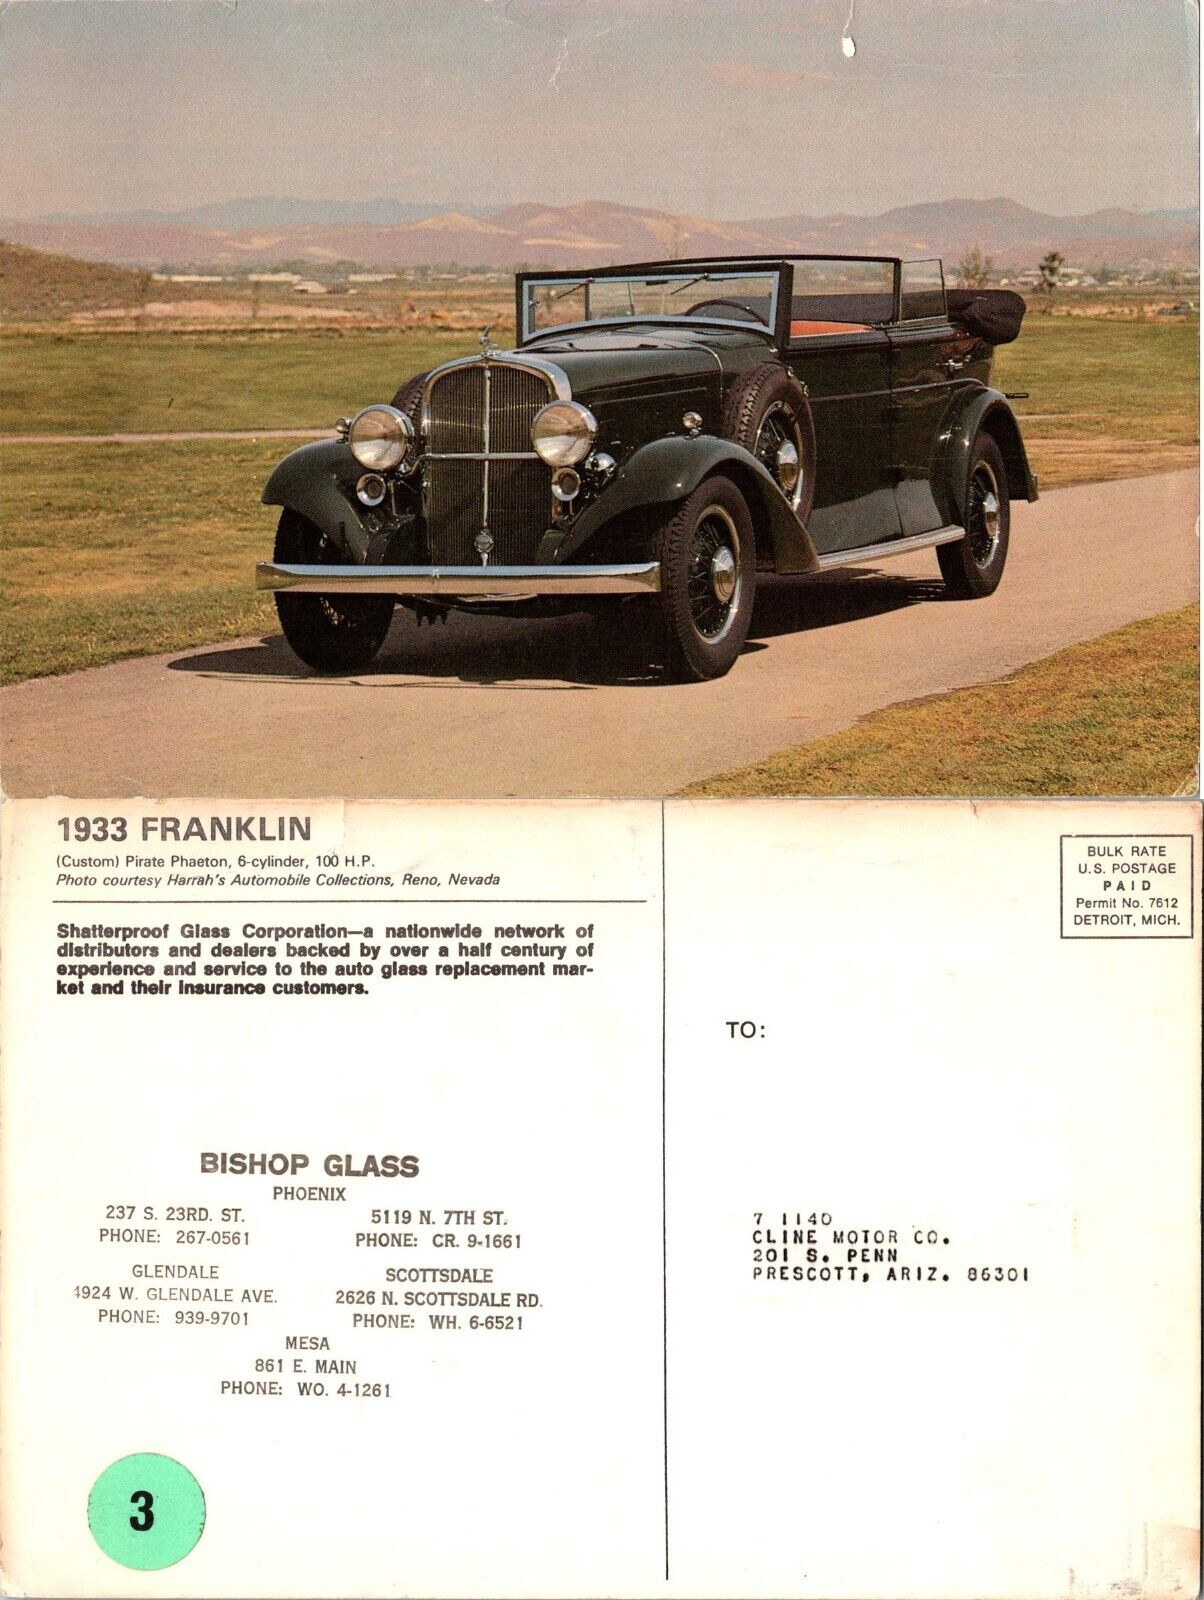 1933 Franklin Vintage Car 6x9 Bishop Glass Advertising Postcard c1940s 